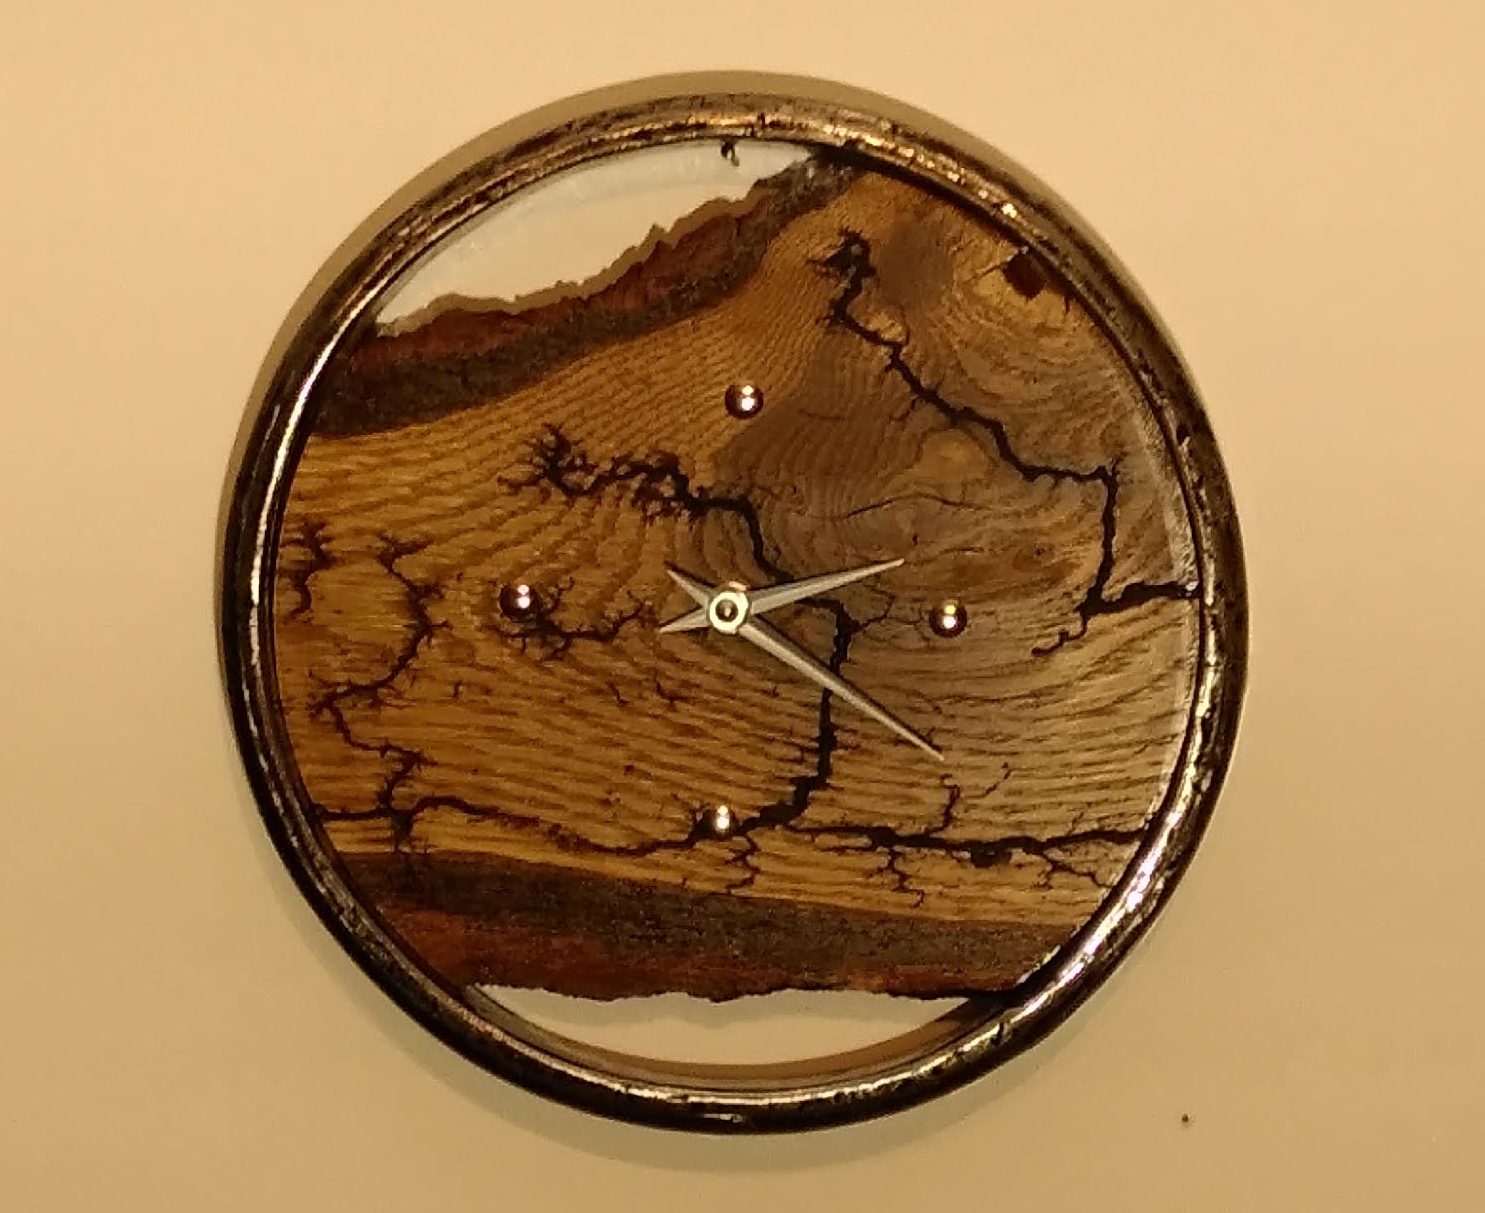 Uhren aus verschiedensten heimischen Holzarten zum Teil in Upcycling u. Lichtenberg Mikrowellen Brenntechnik